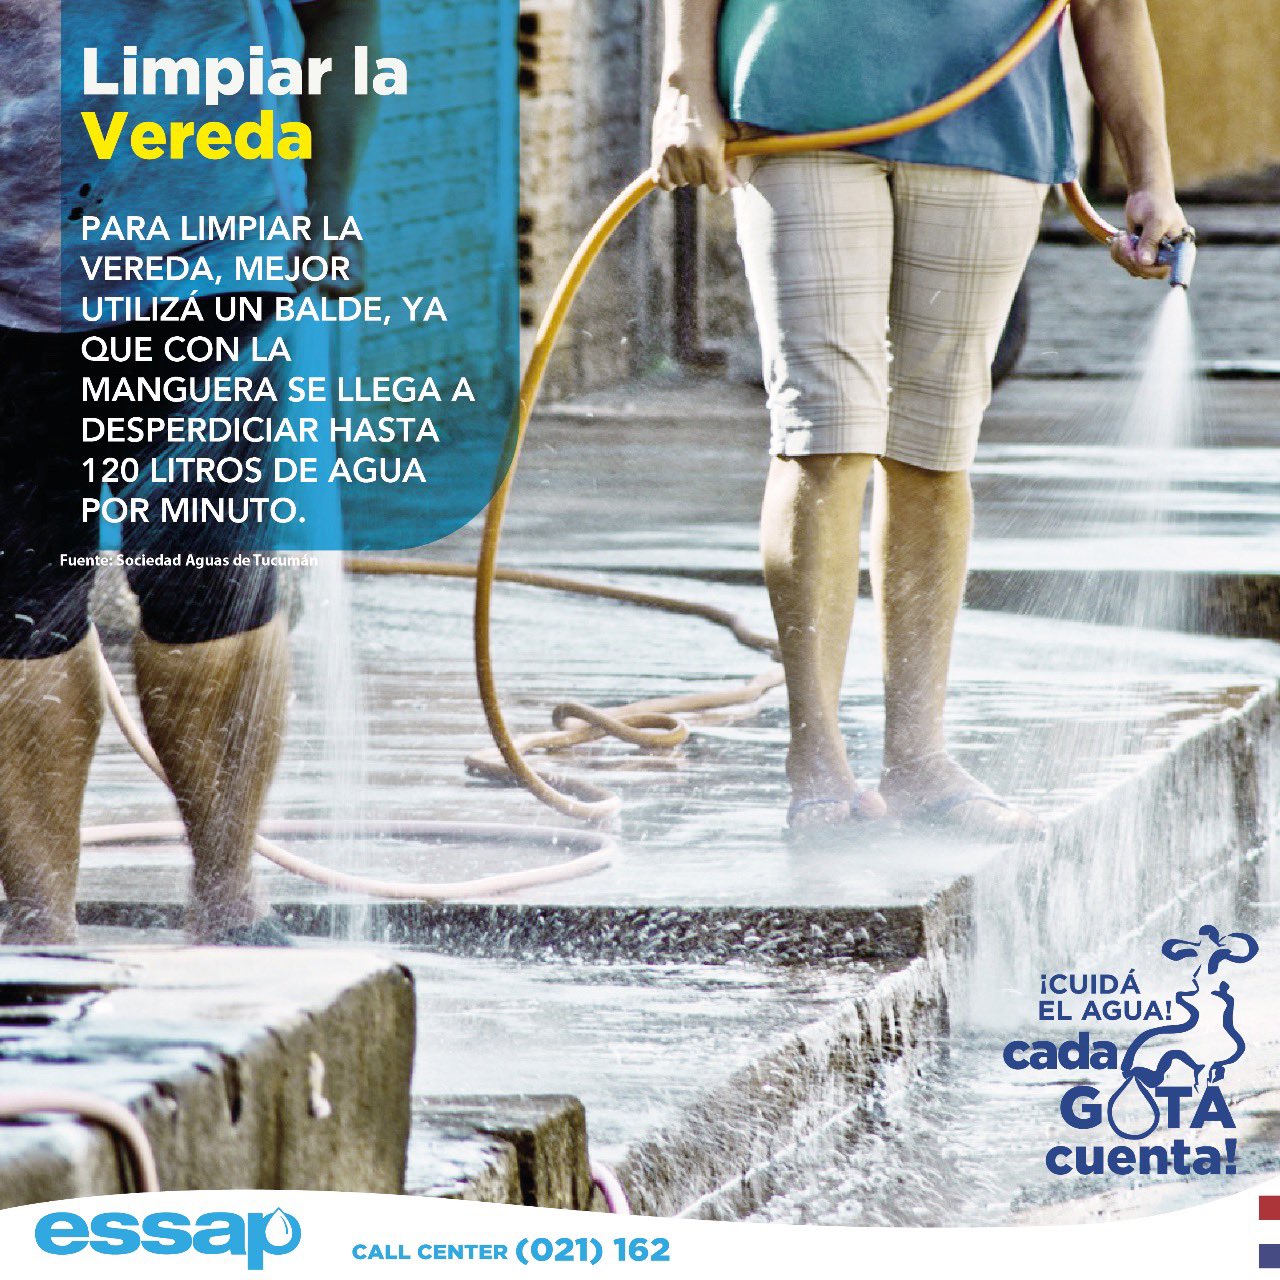 ESSAP insta a un mejor aprovechamiento del agua ante alto consumo y crisis hídrica en el país